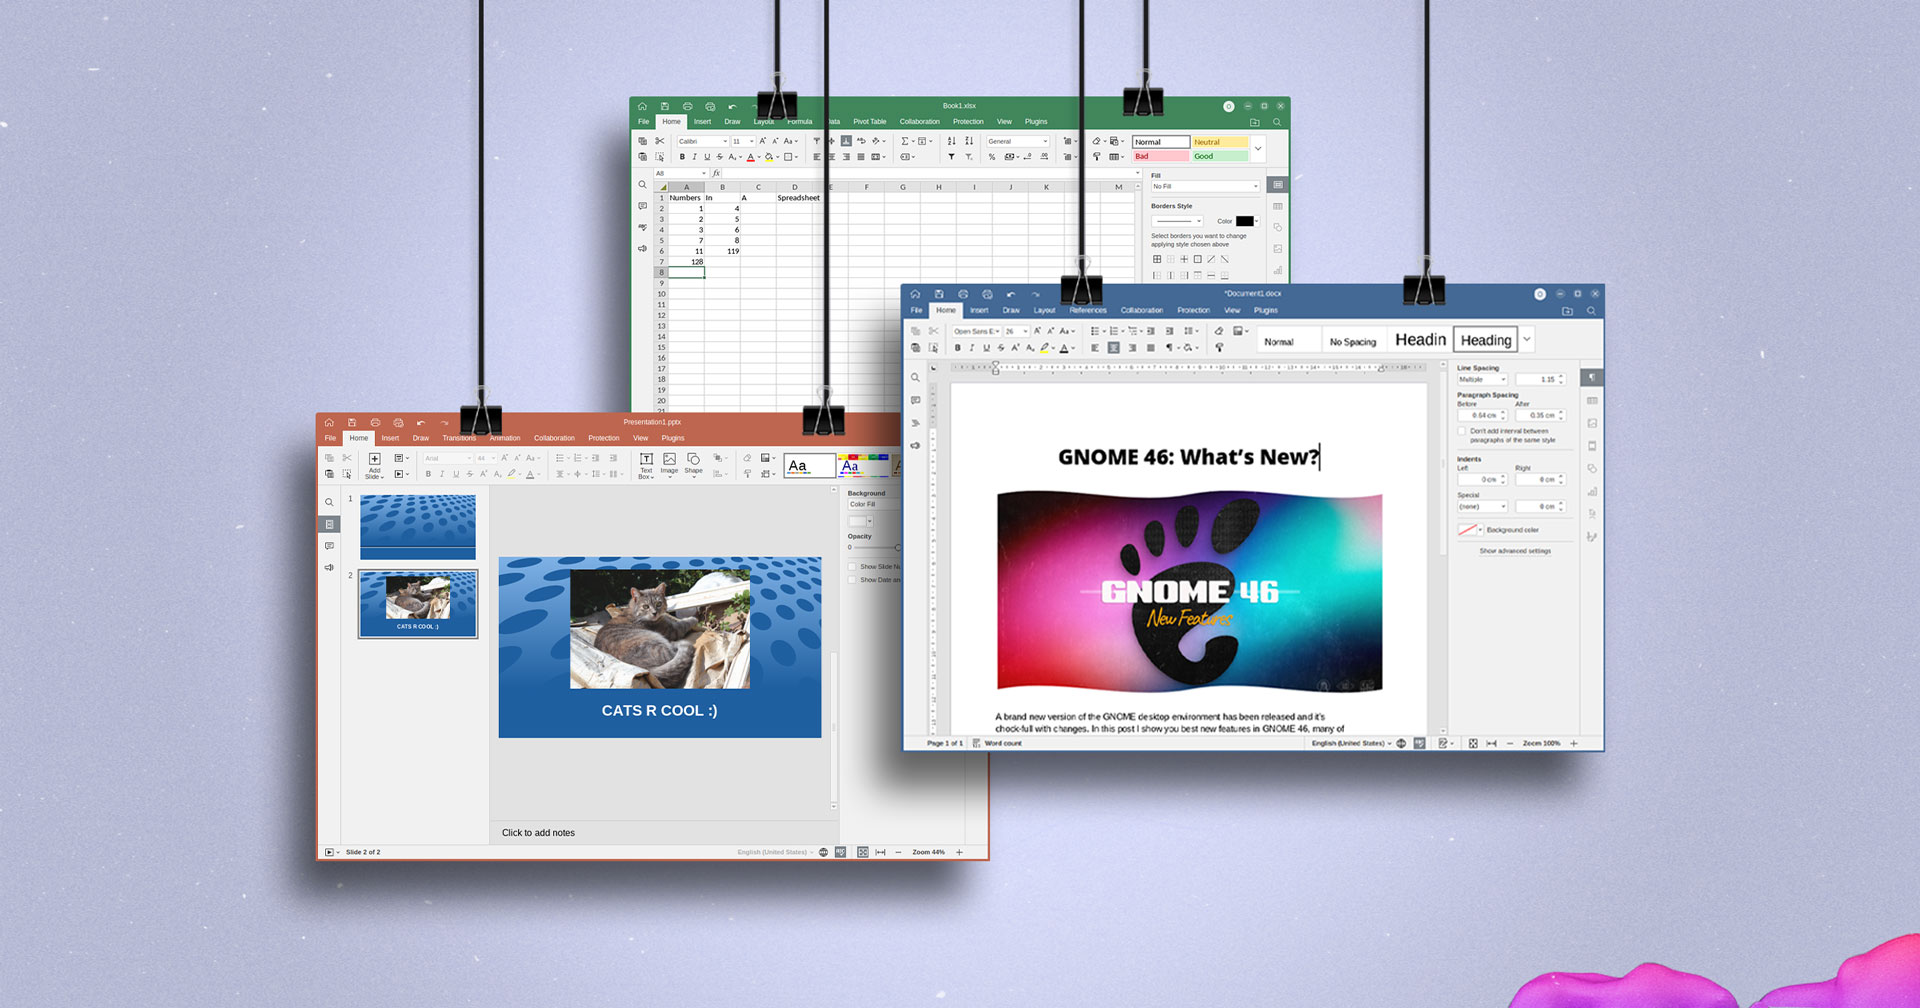 OnlyOffice desktop editors